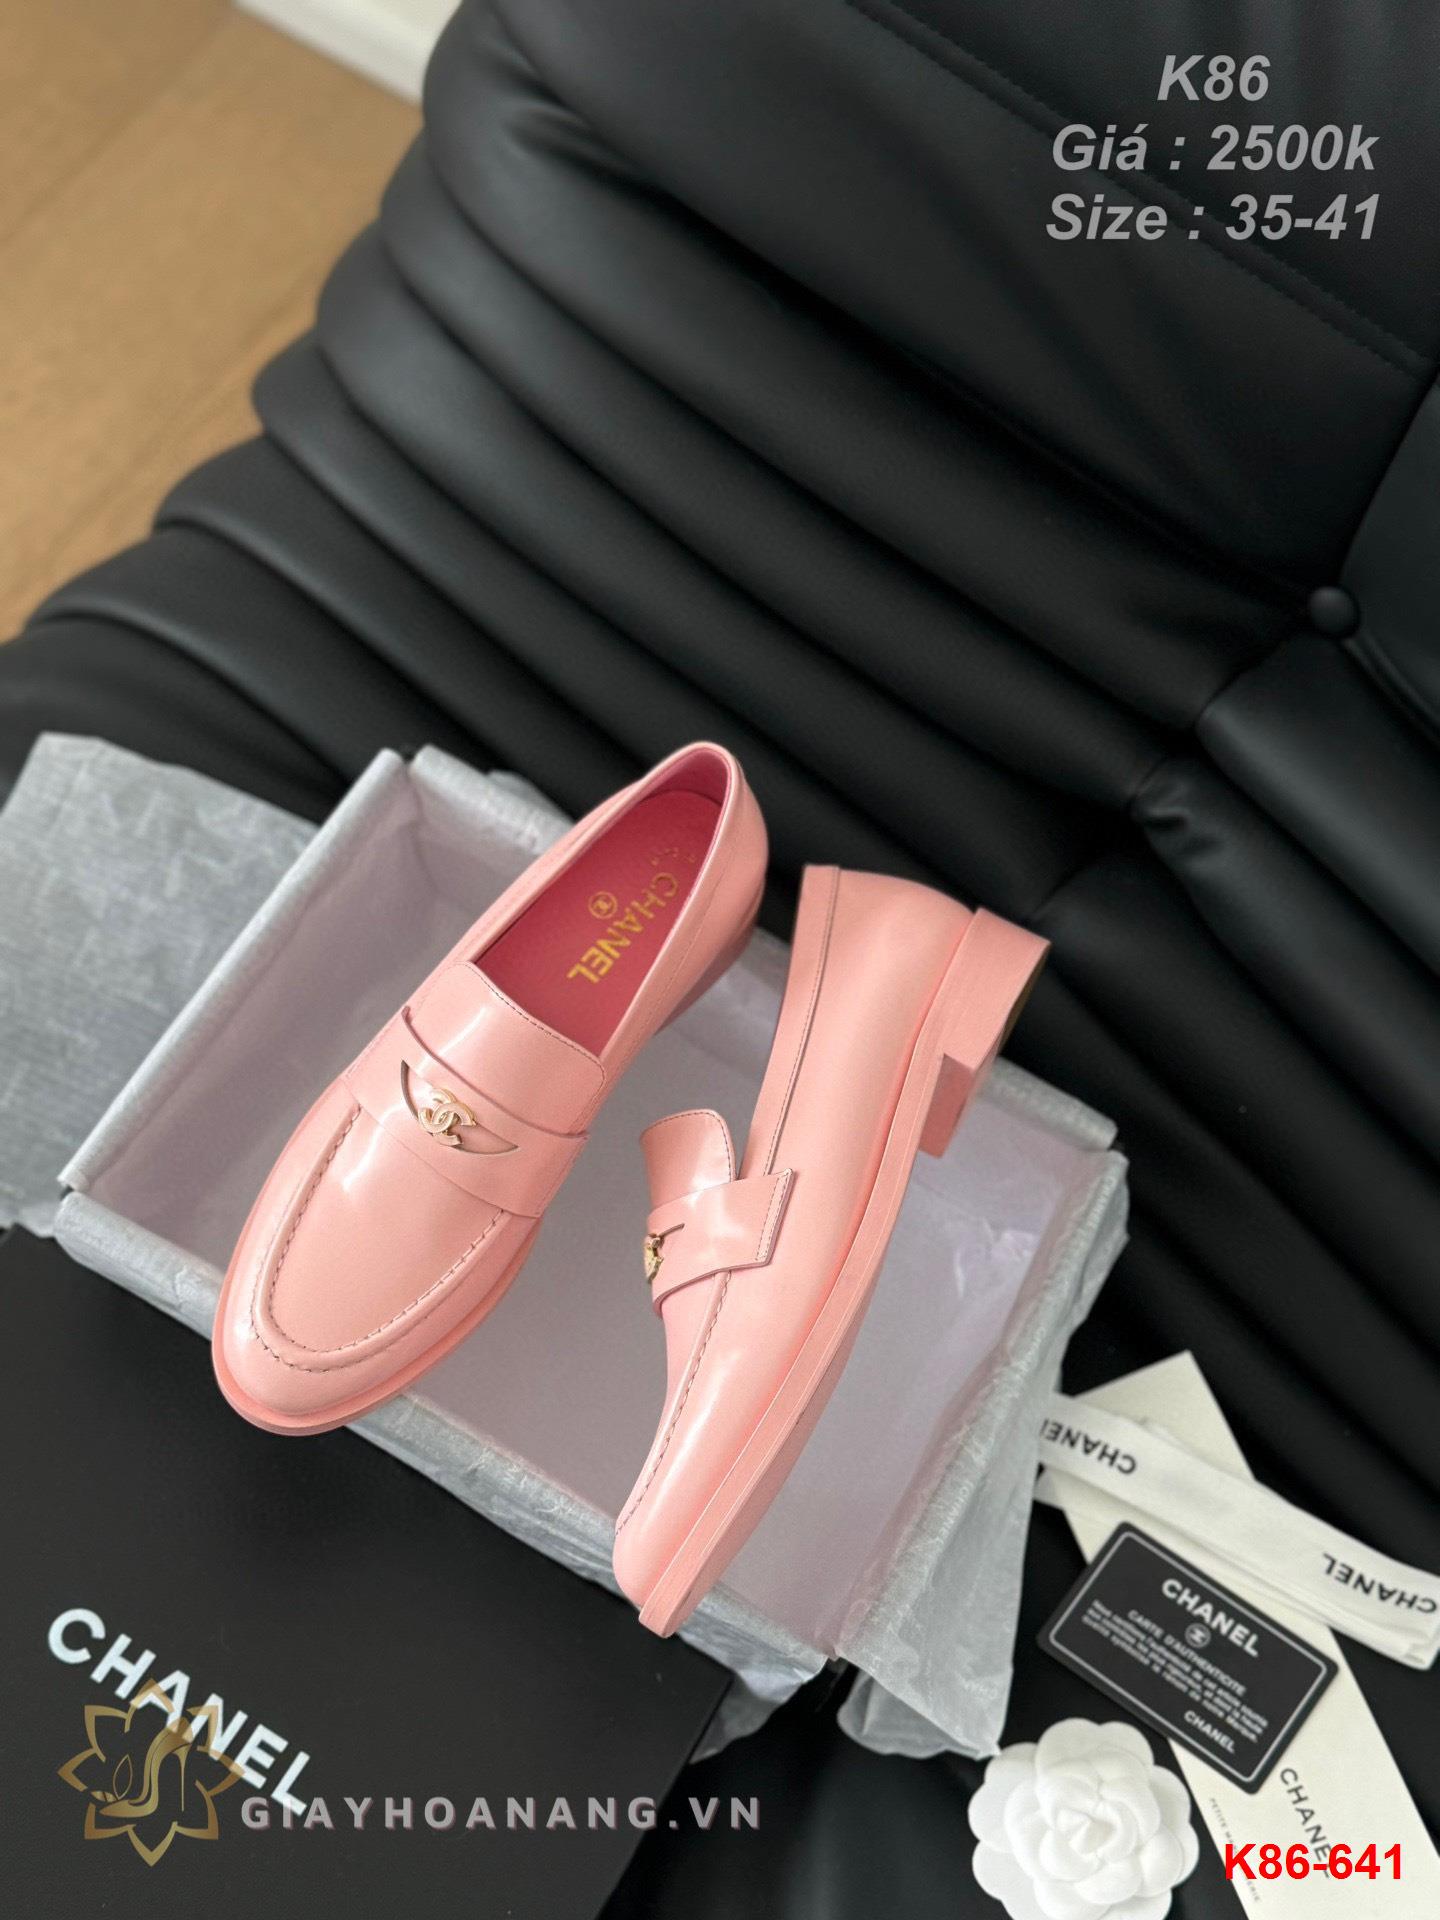 K86-641 Chanel giày lười siêu cấp